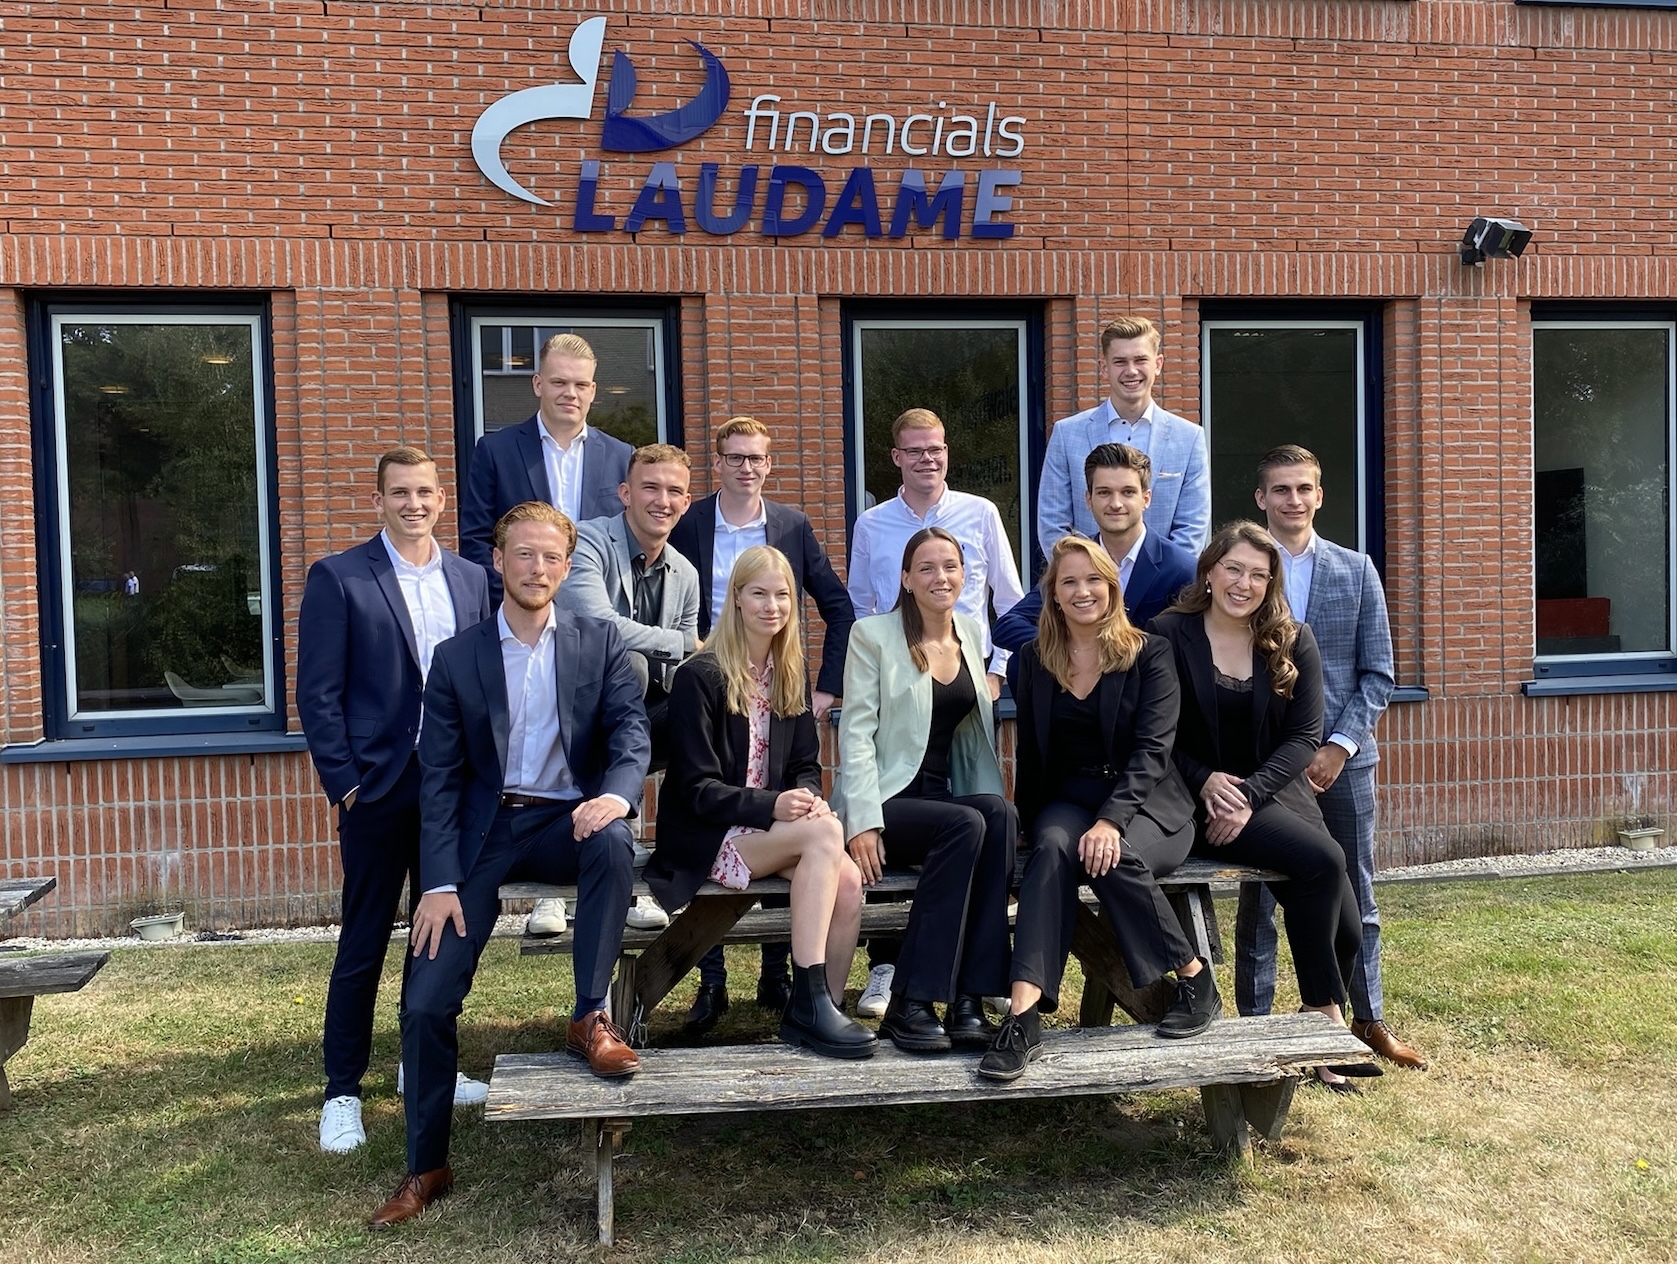 Groepsfoto nieuwe collega's Laudame Financials